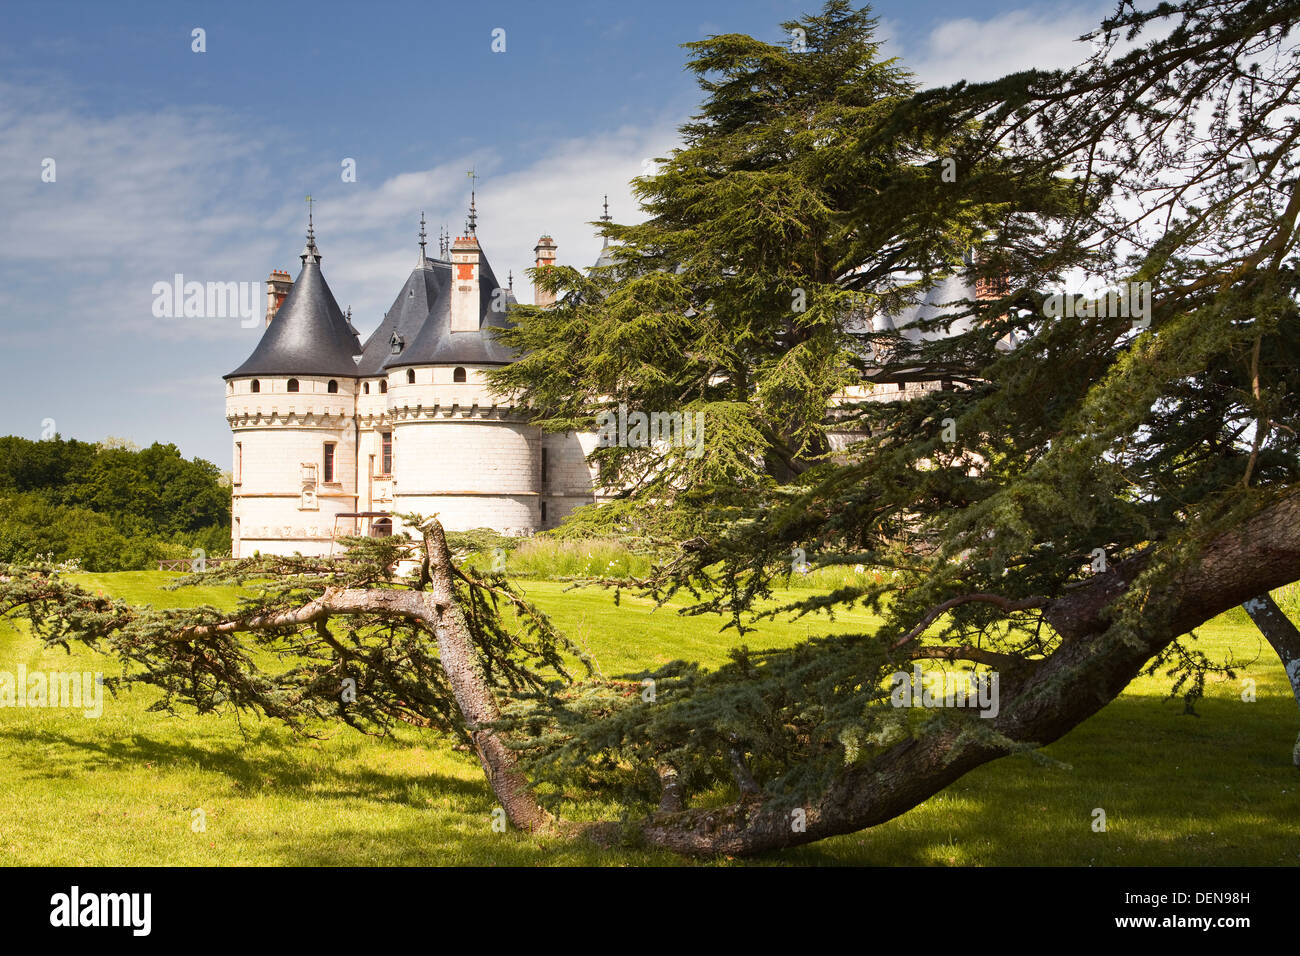 El palacio renacentista en Chaumont-sur-Loire en Francia. Foto de stock